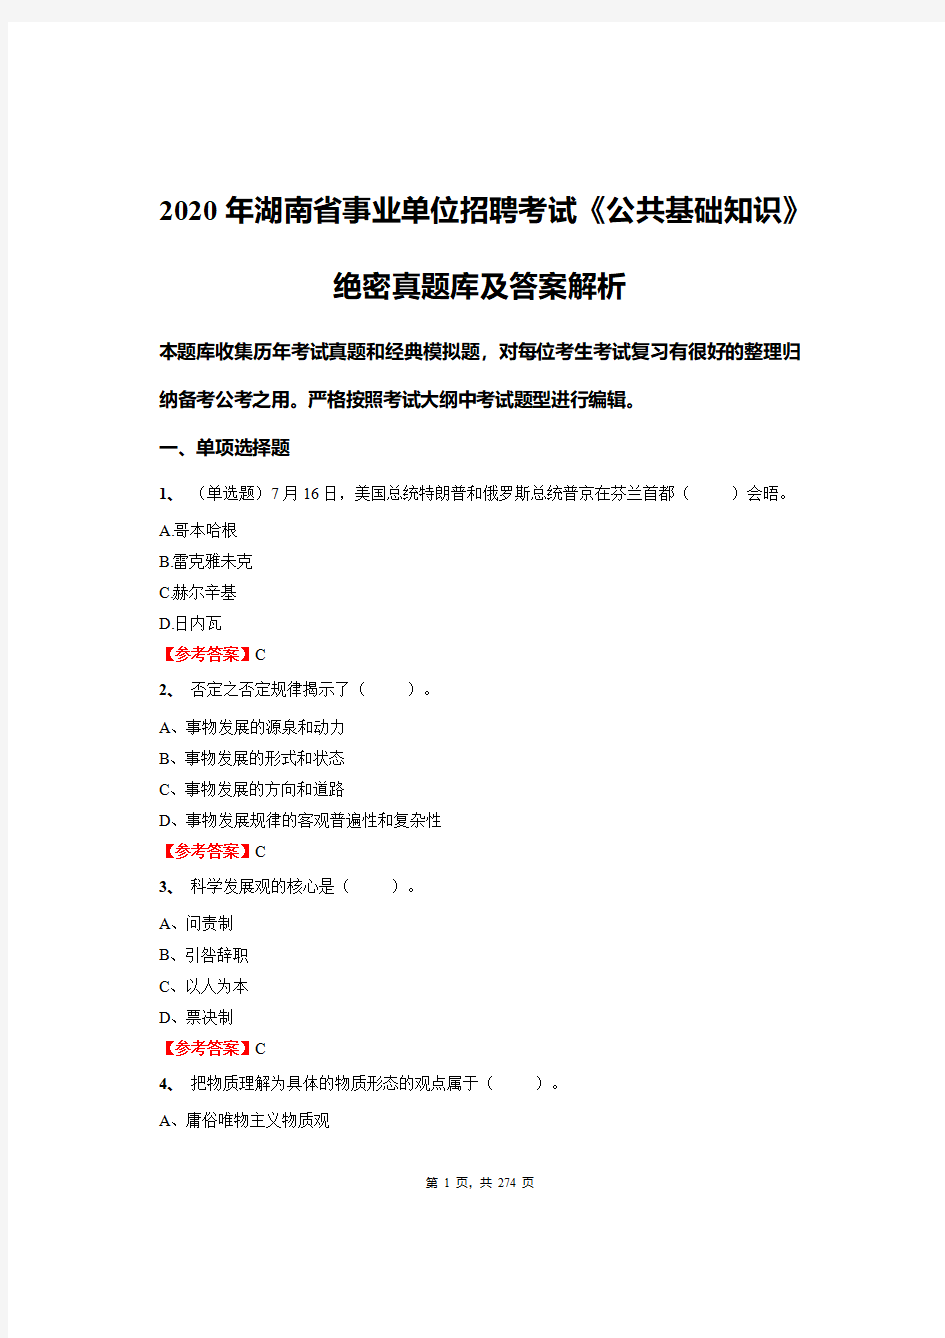 2020年湖南省事业单位招聘考试《公共基础知识》绝密真题库及答案解析